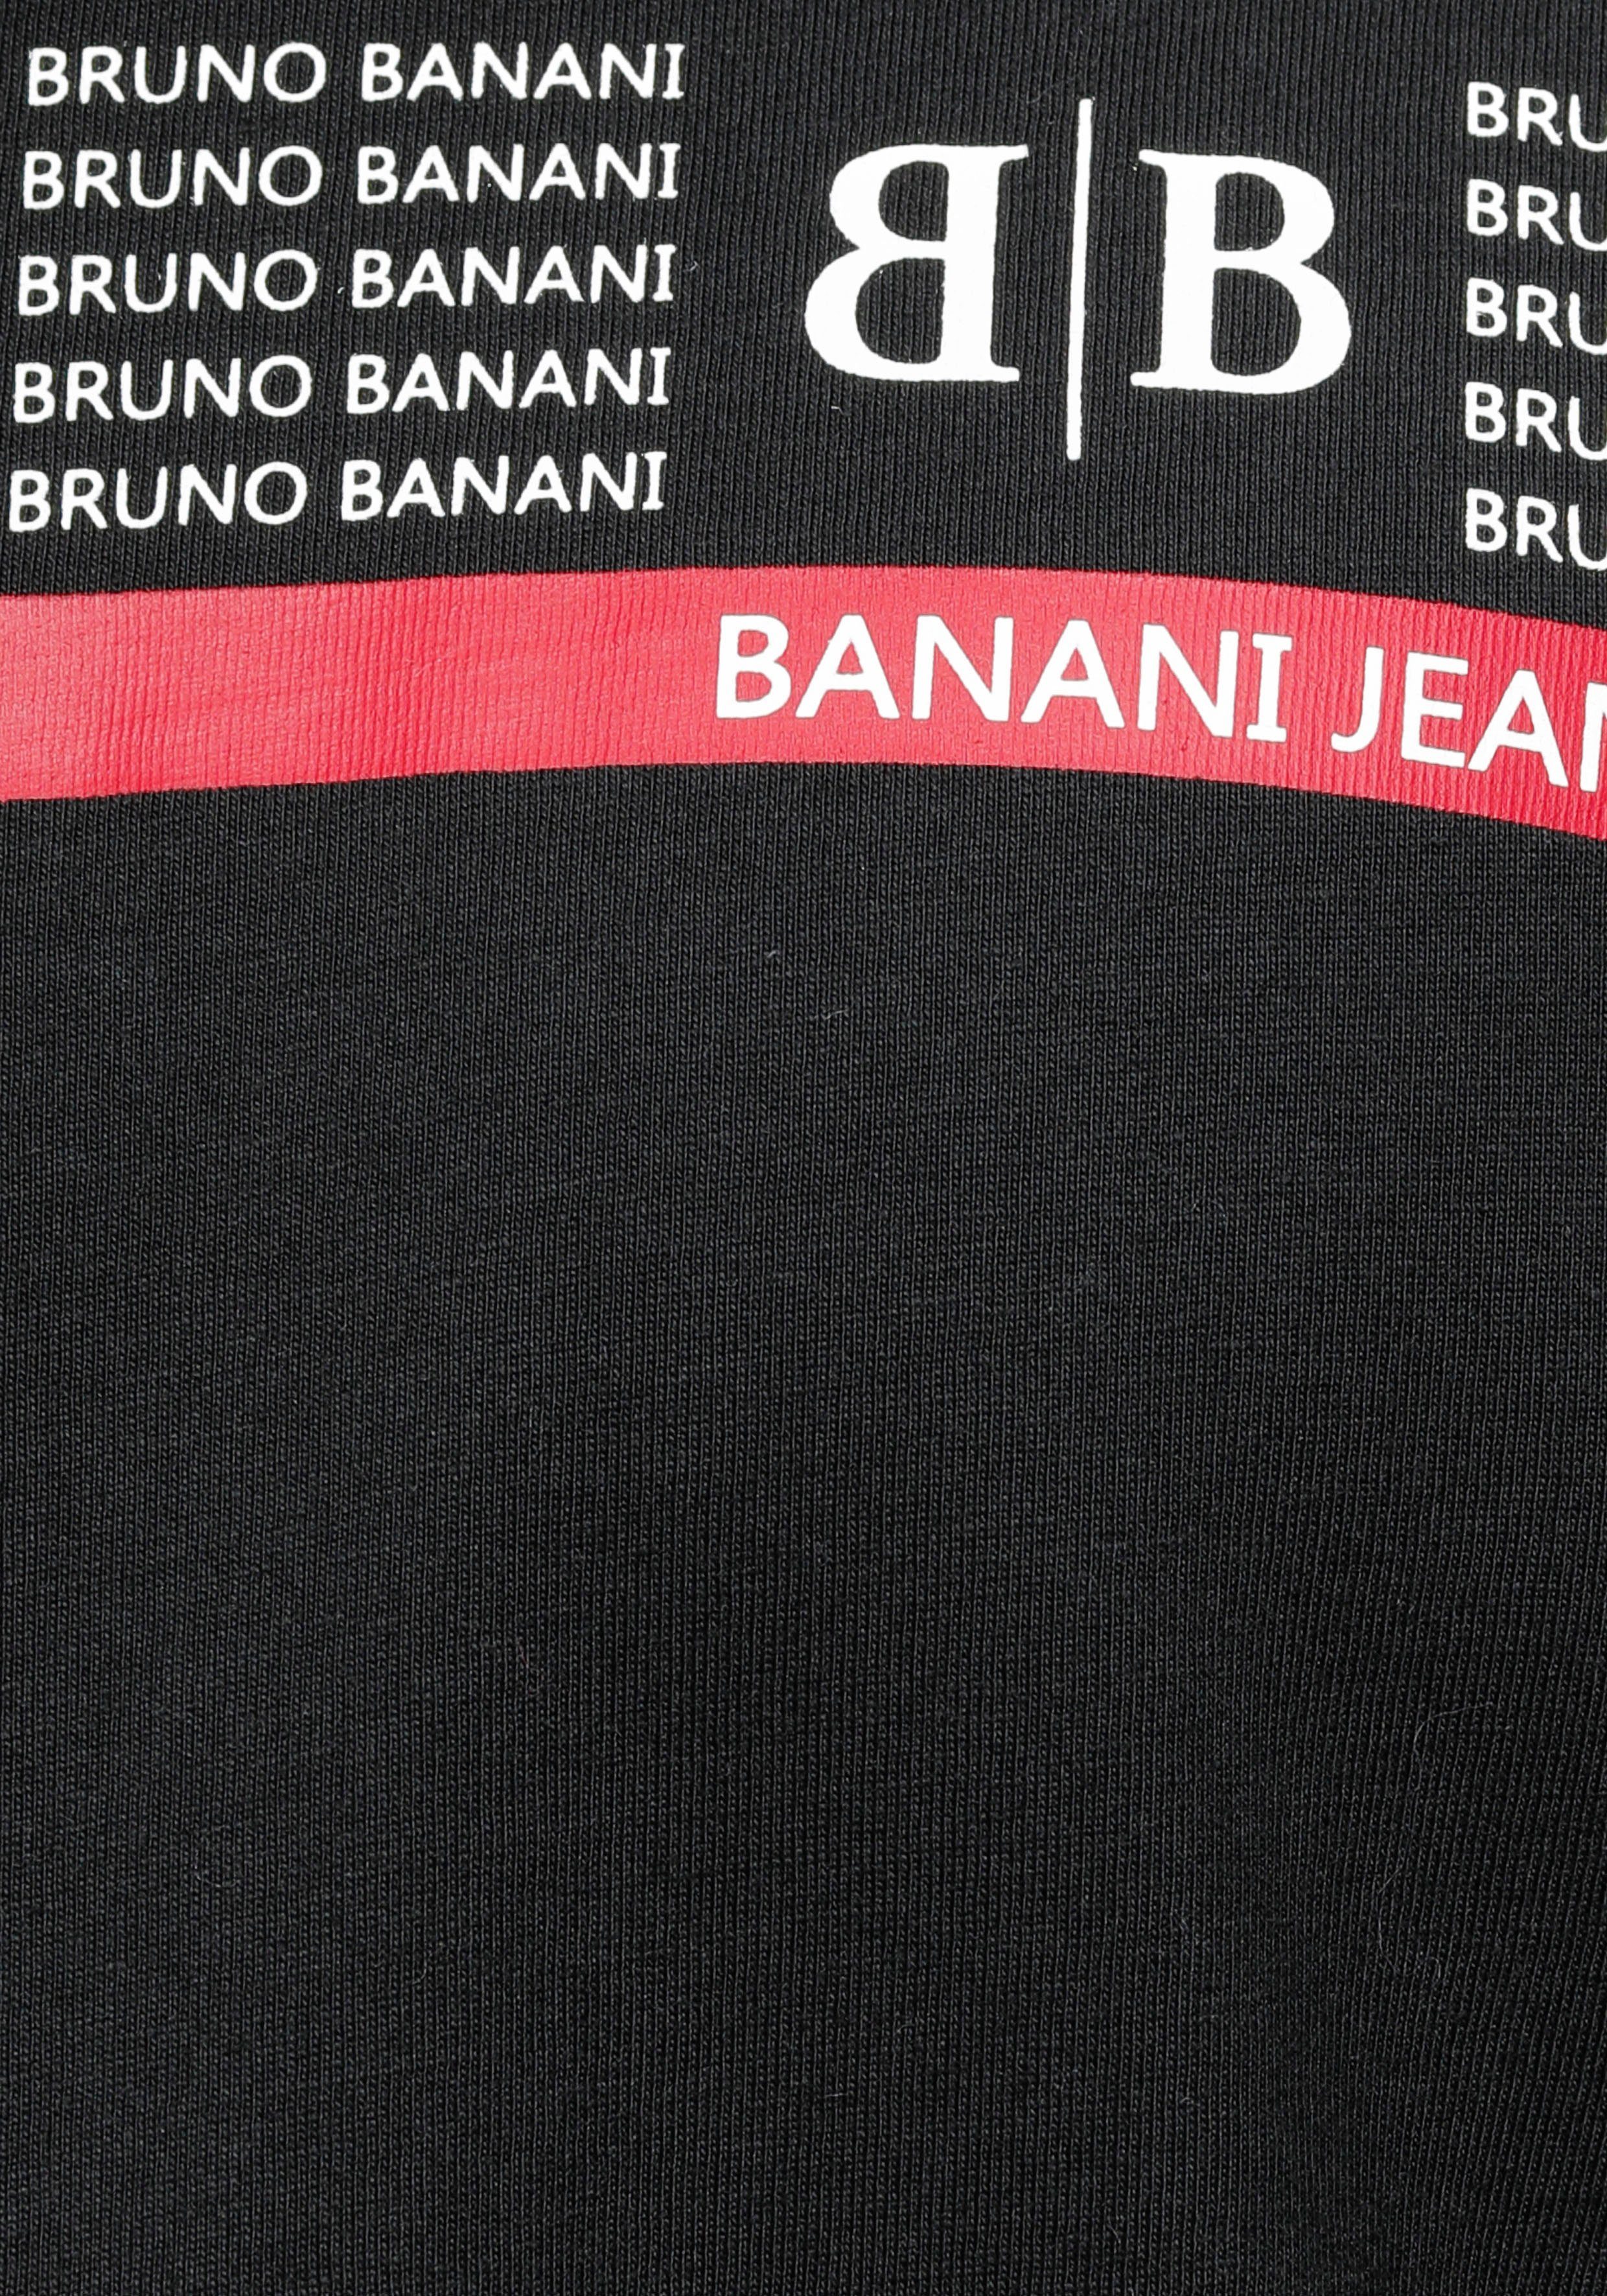 Banani Langarmshirt schwarz Markenprint mit Bruno